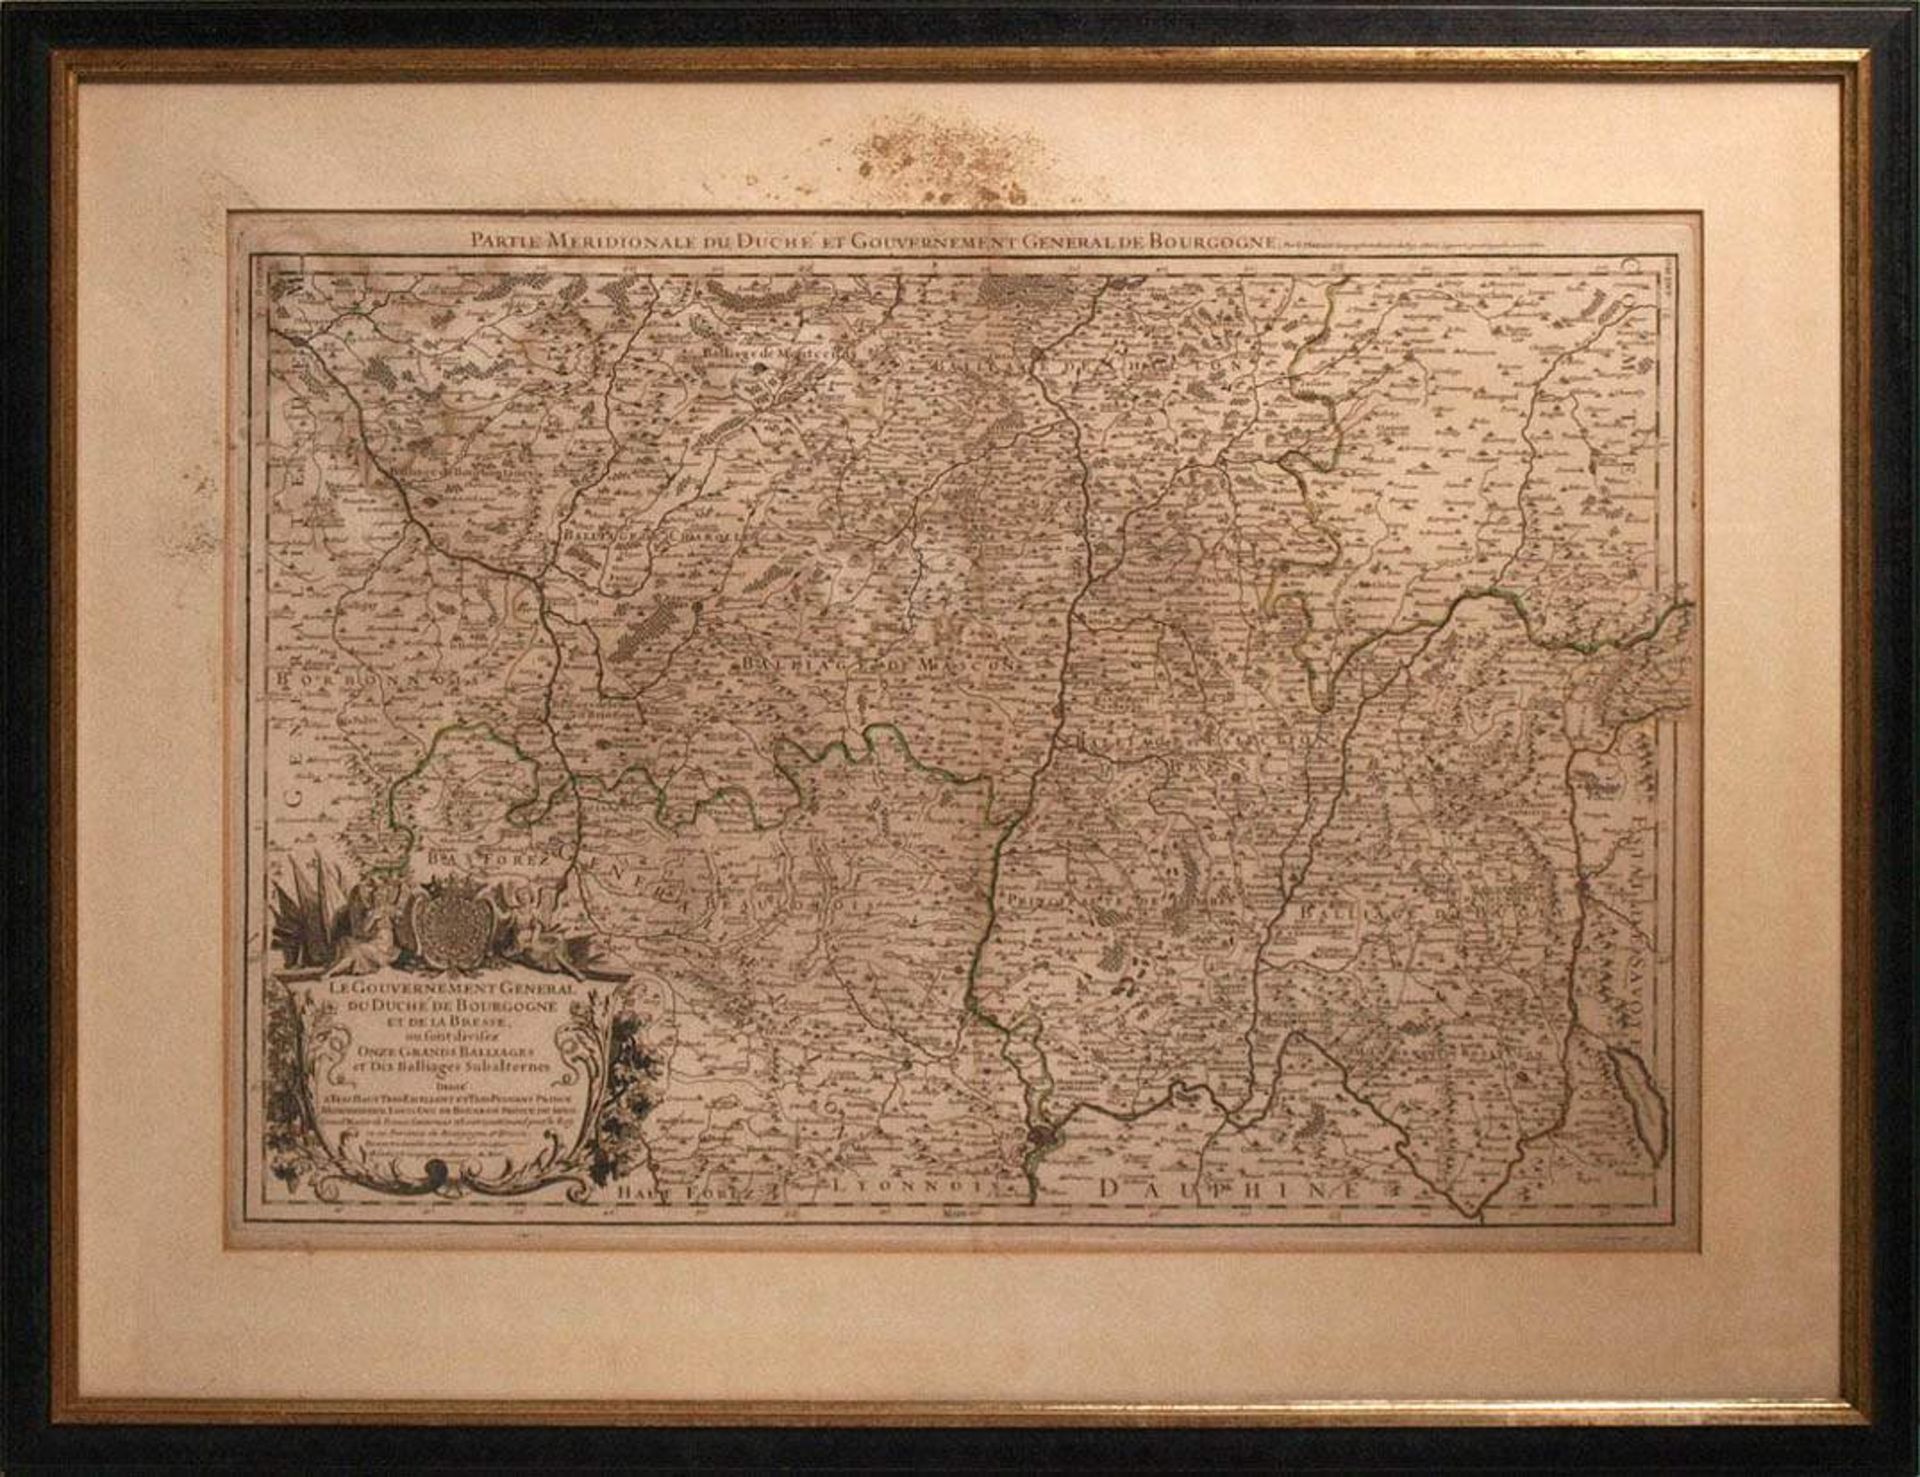 Jaillot, Alexis Hubert, 1632 - 1712Landkarte des südlichen Burgund. Links unten Titelkartusche mit